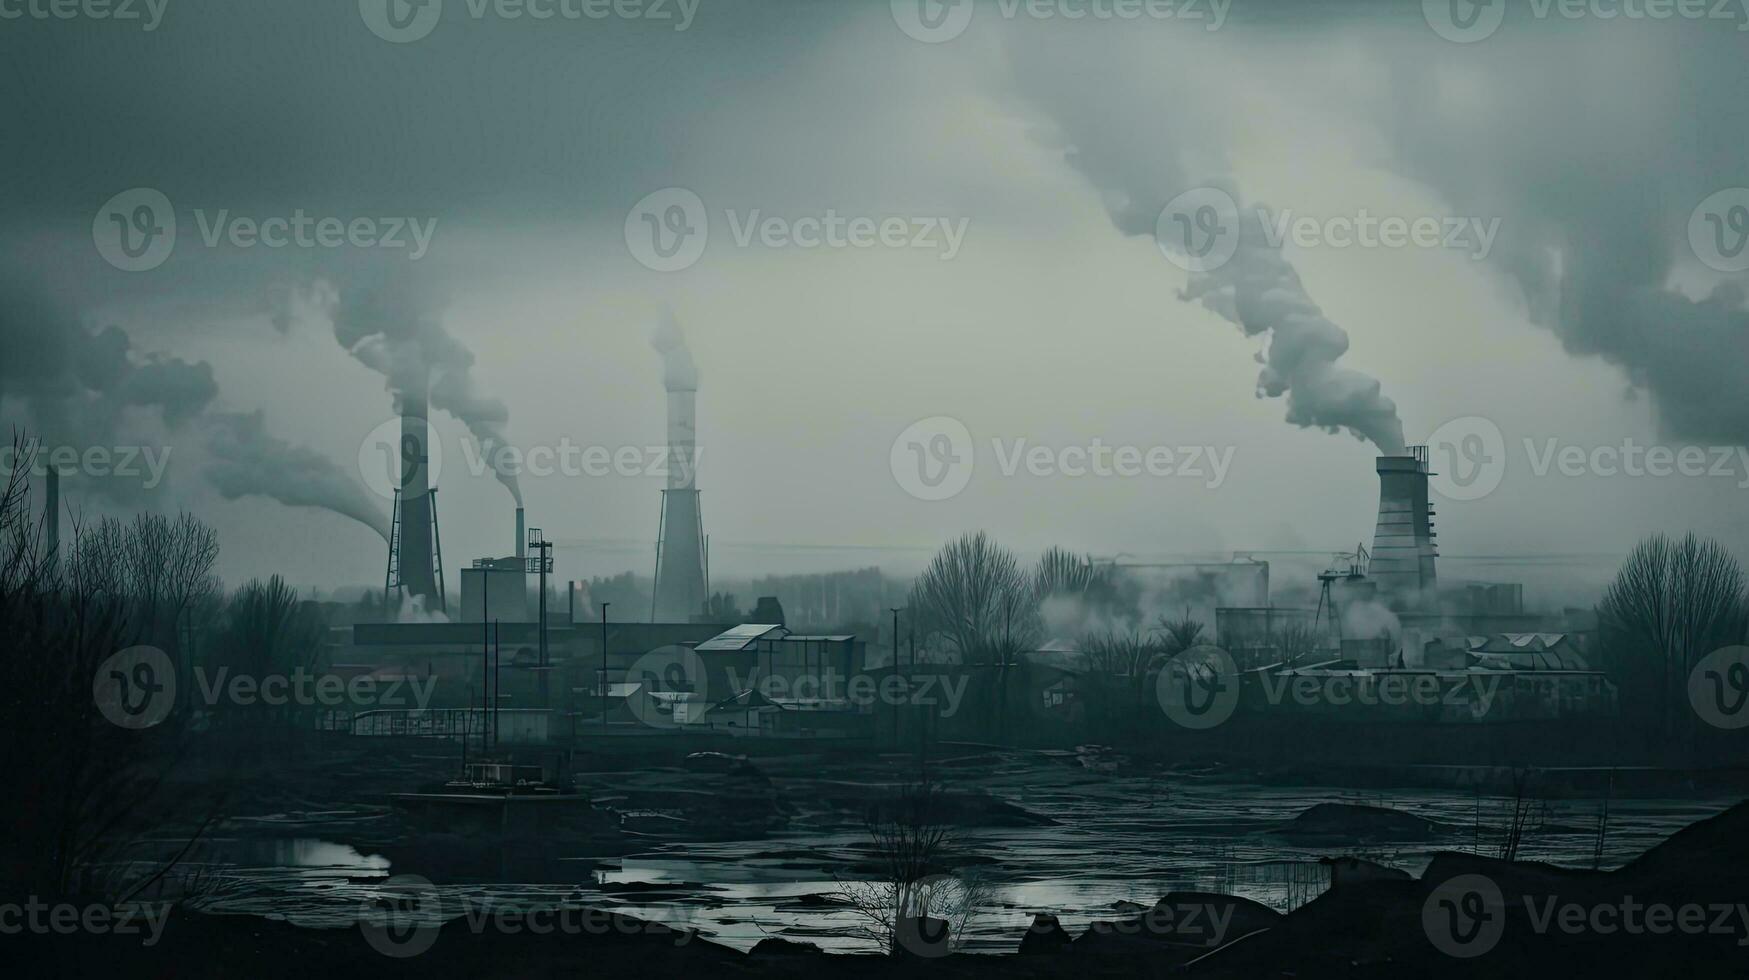 förorenande fabrik bakgrund med massor av svart rök skorstenar, produktion utsläpp, natur förorening tema foto